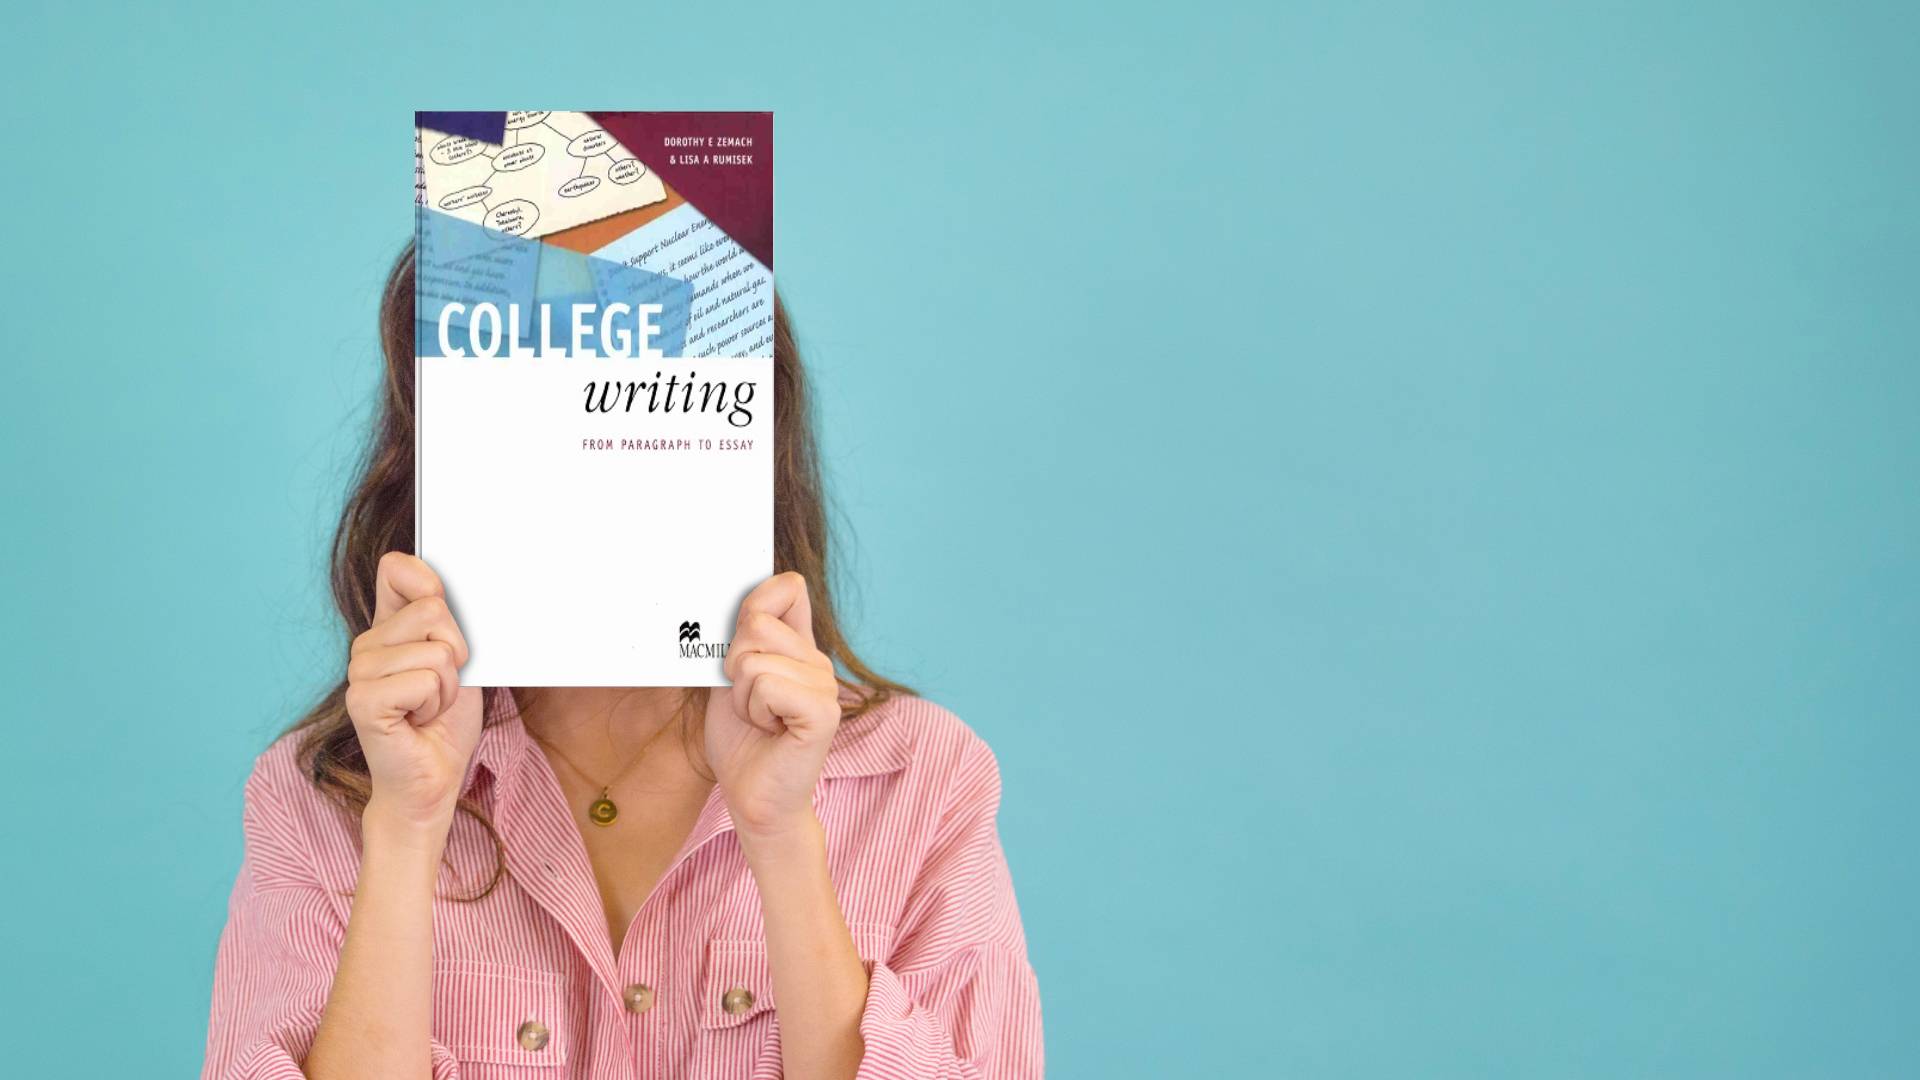 خرید کتاب زبان دانشگاهی | کتاب زبان انگلیسی | College Writing From Paragraph To Essay | کالج رایتینگ فرام پاراگراف تو ایزی